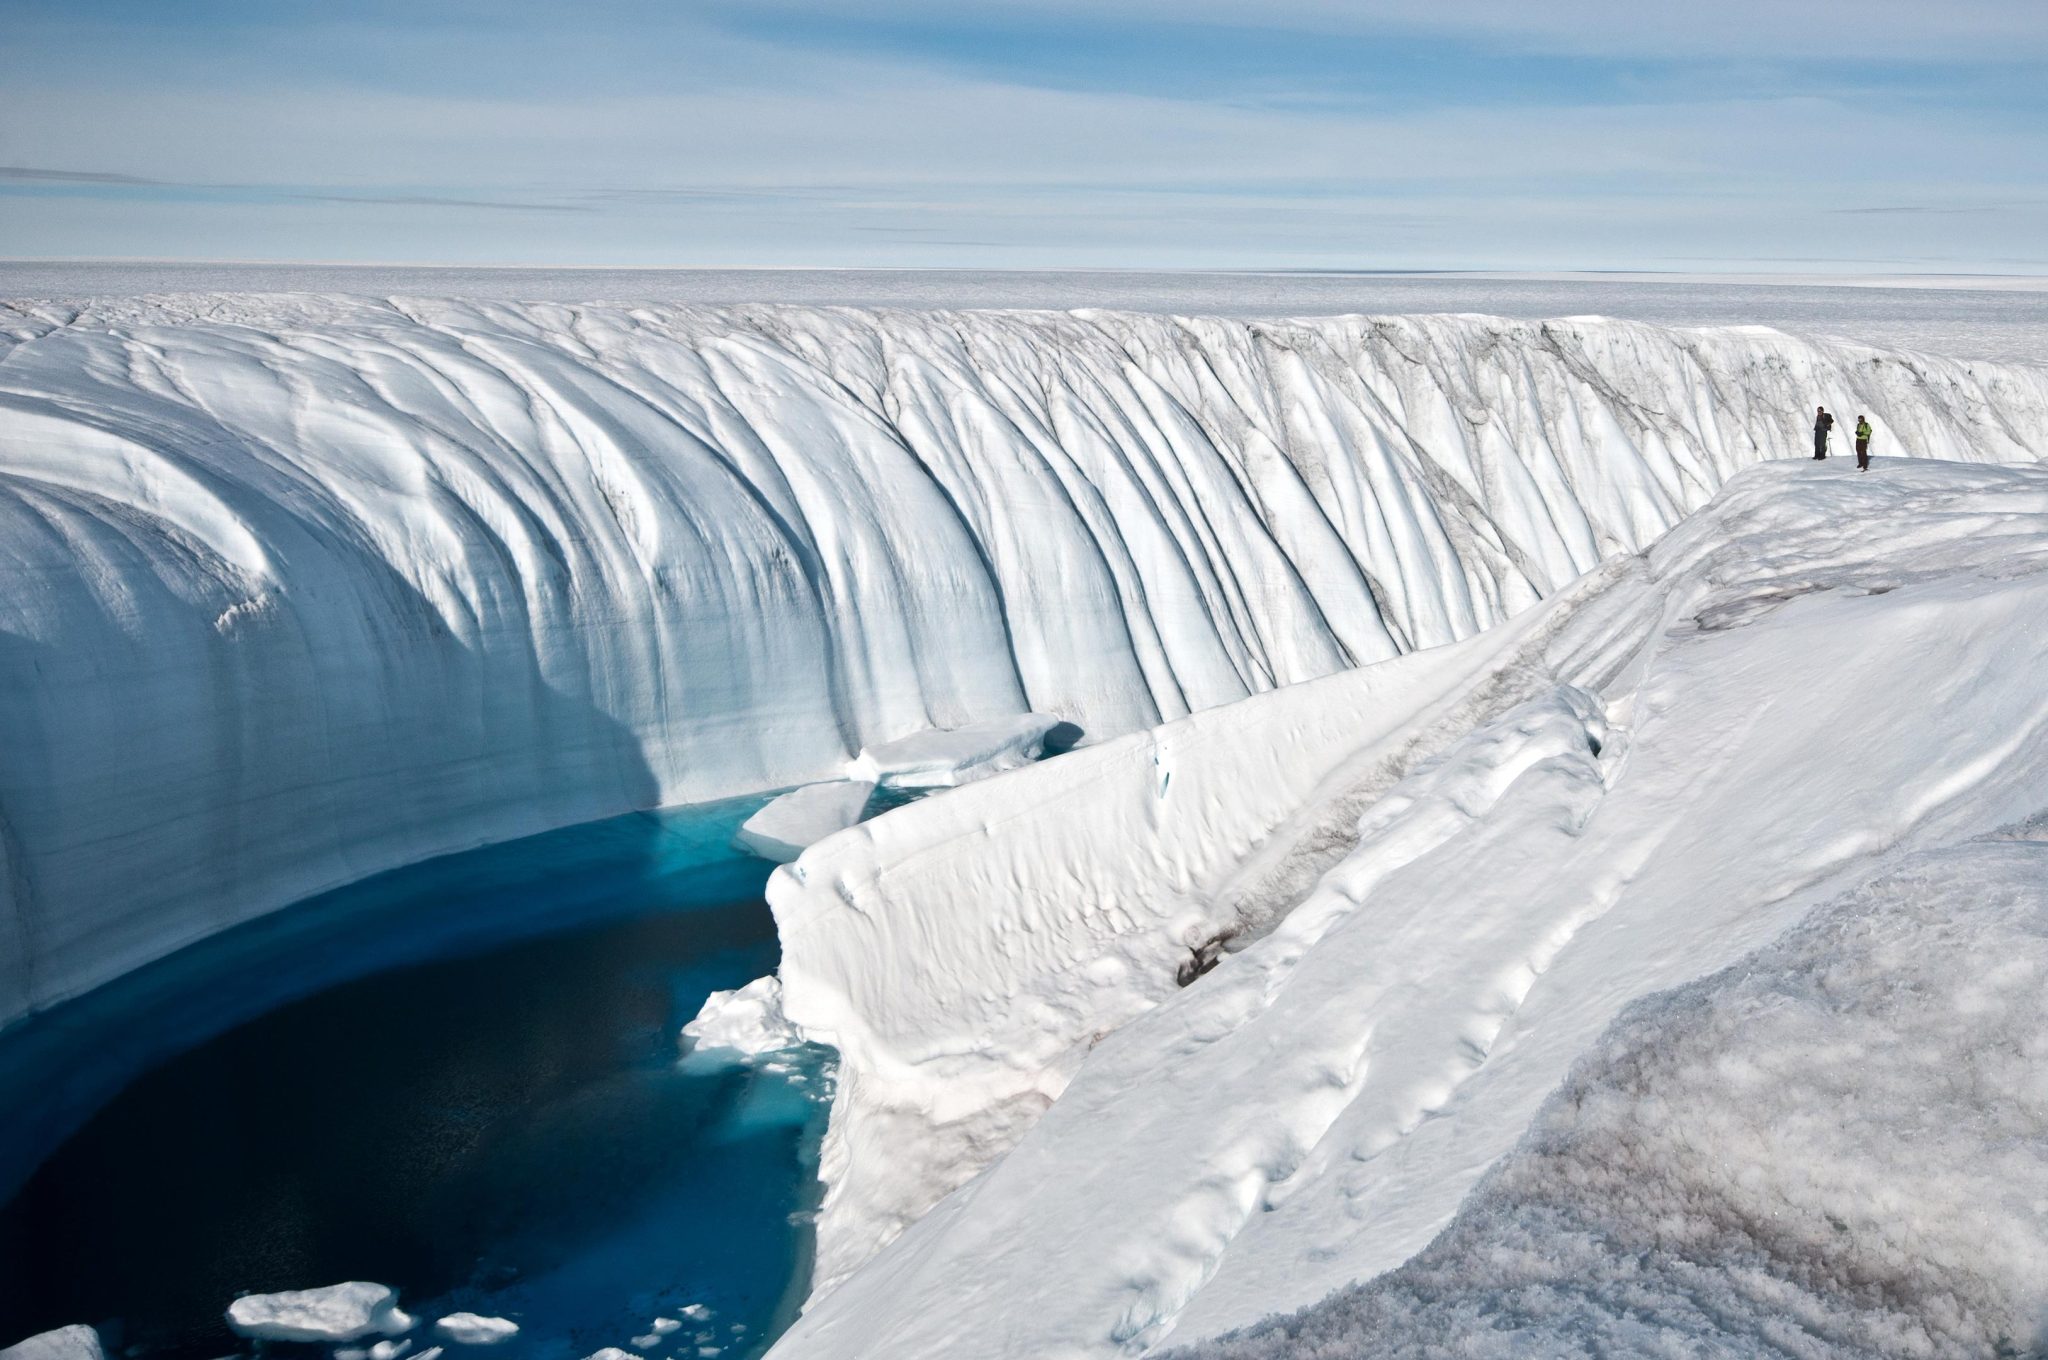 格陵兰岛频繁的冰雪融化导致全球洪水风险增加